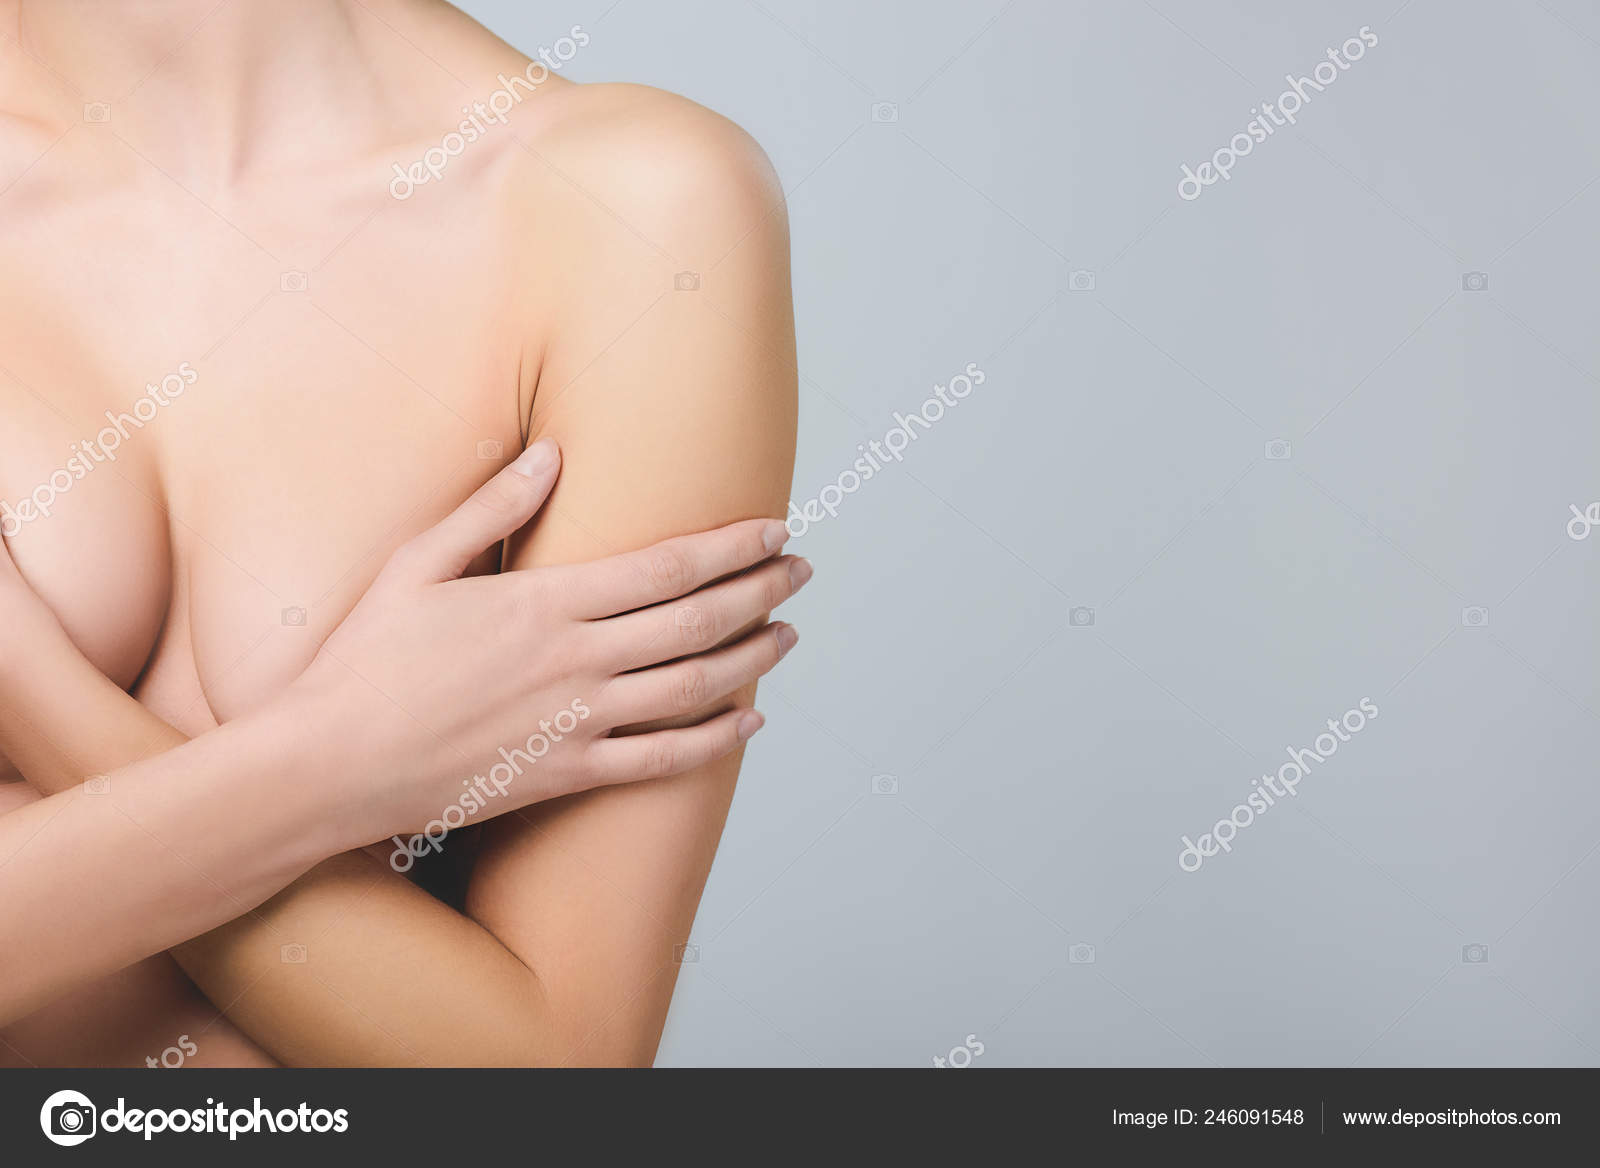 https://st4.depositphotos.com/12985790/24609/i/1600/depositphotos_246091[001-999]-stock-photo-blonde-naked-girl-covering-breast.jpg